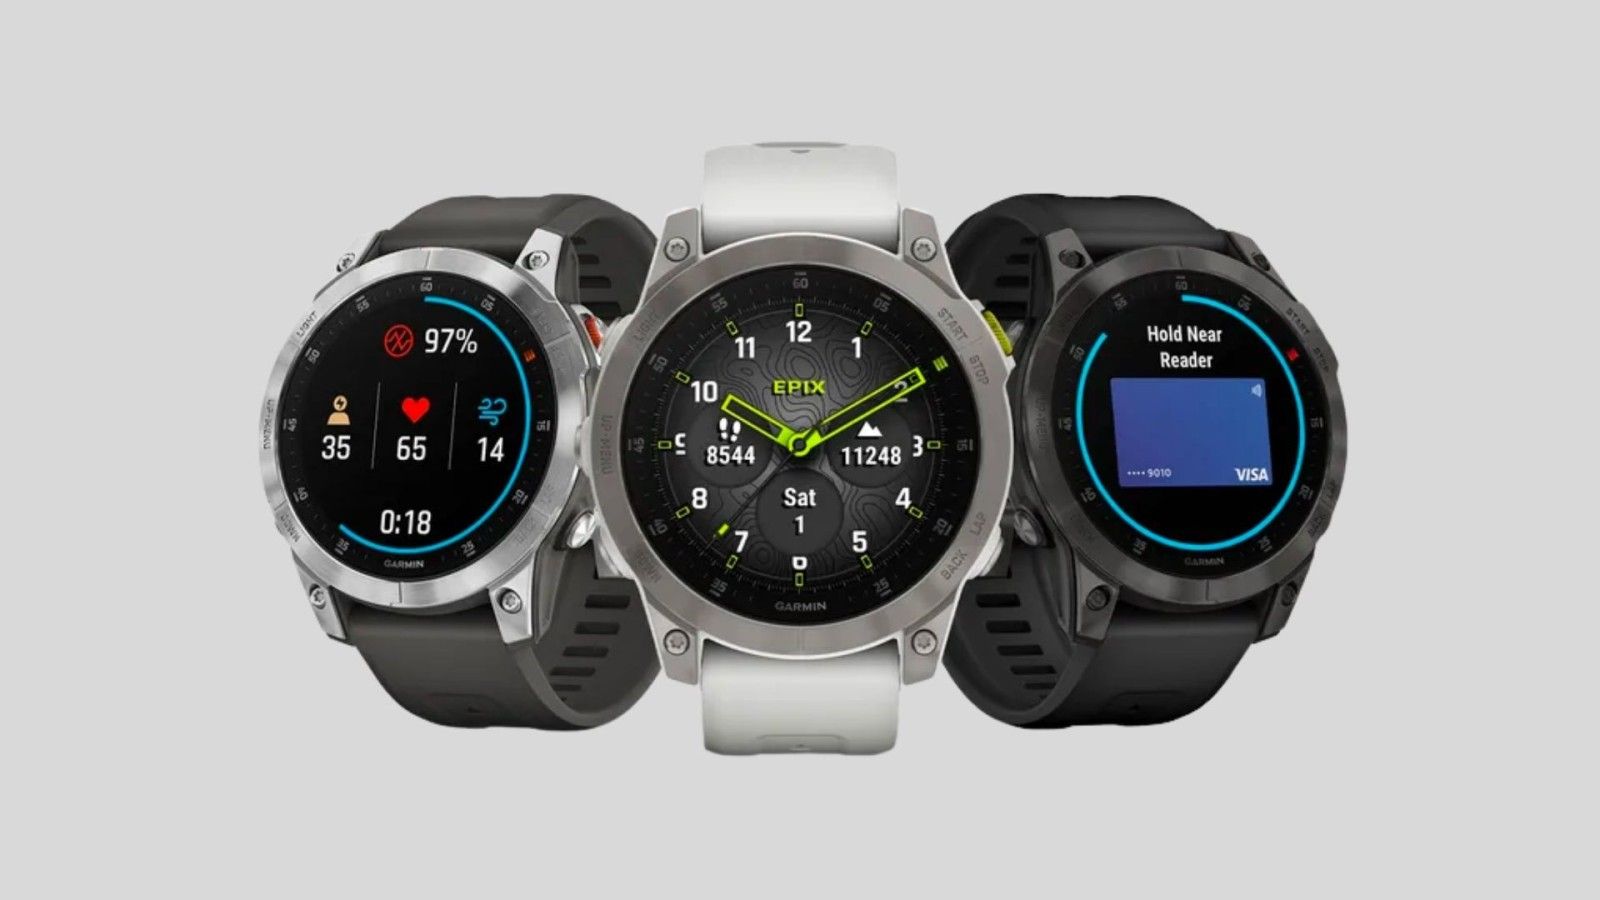 Garmin Epix smartwatches